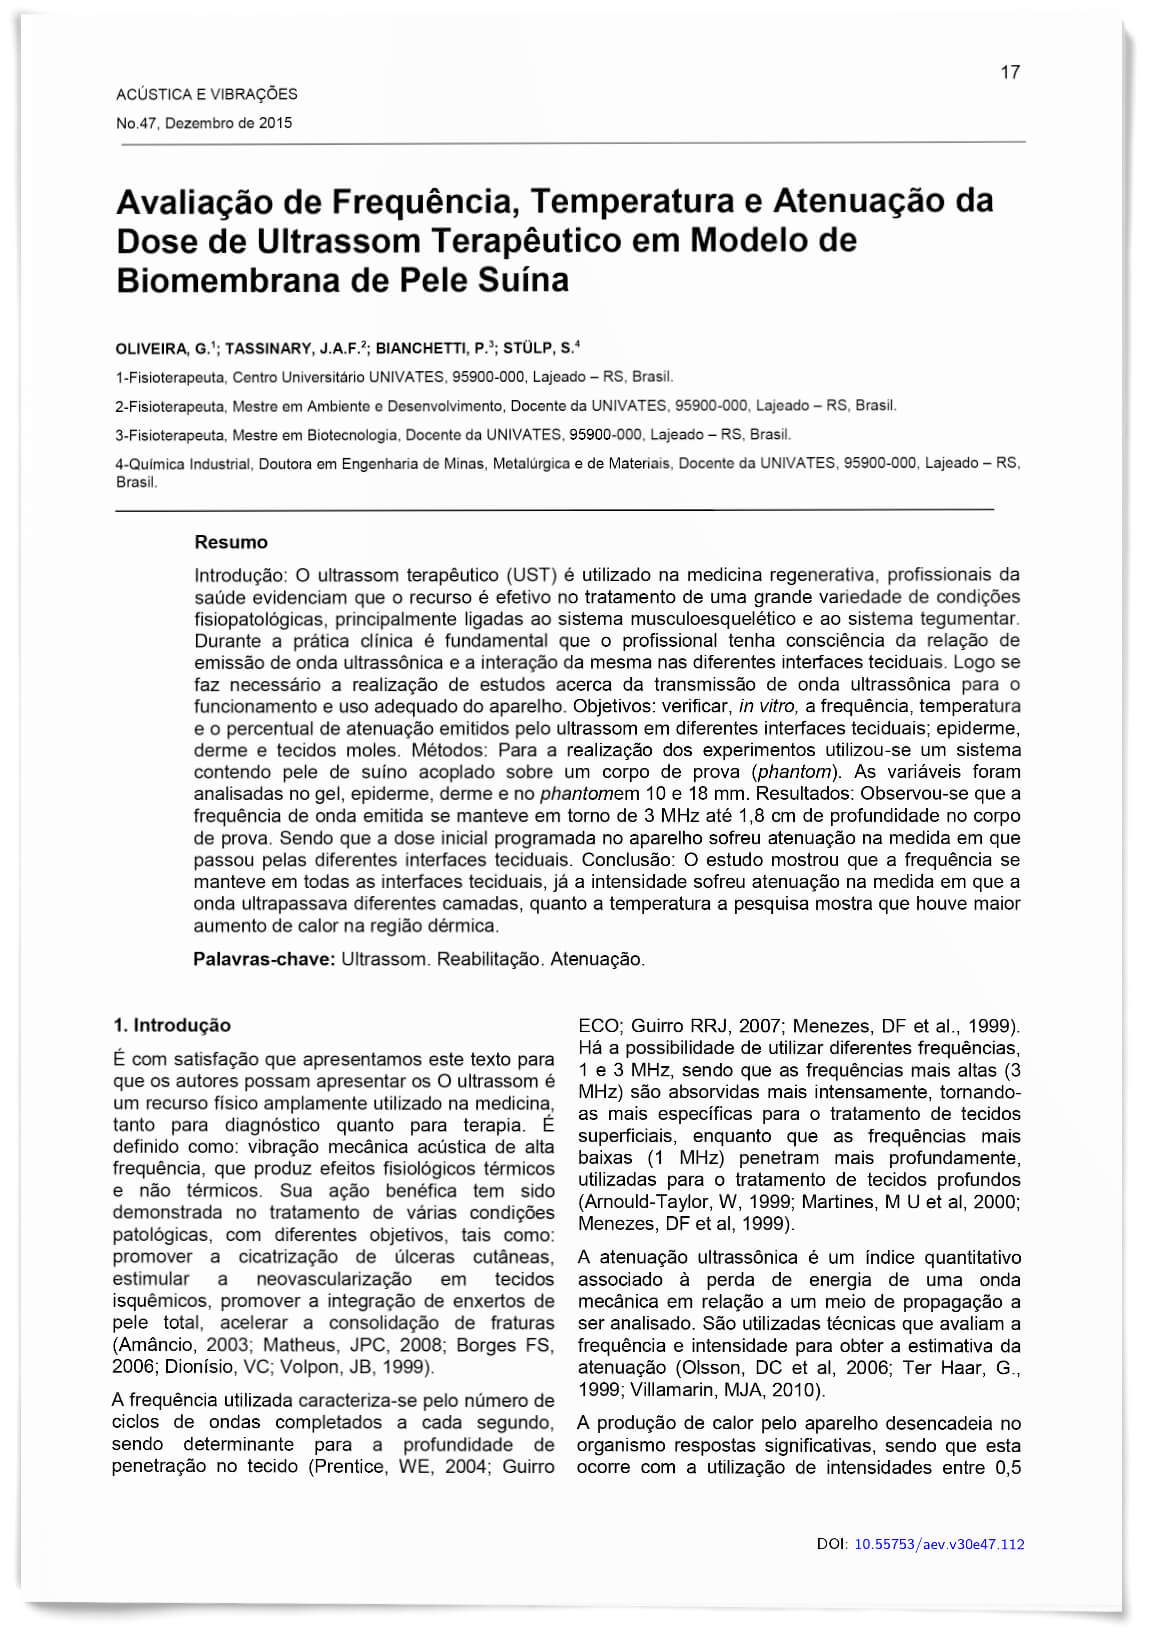 Capa - Avaliação de Frequência, Temperatura e Atenuação da Dose de Ultrassom Terapêutico em Modelo de Biomembrana de Pele Suína